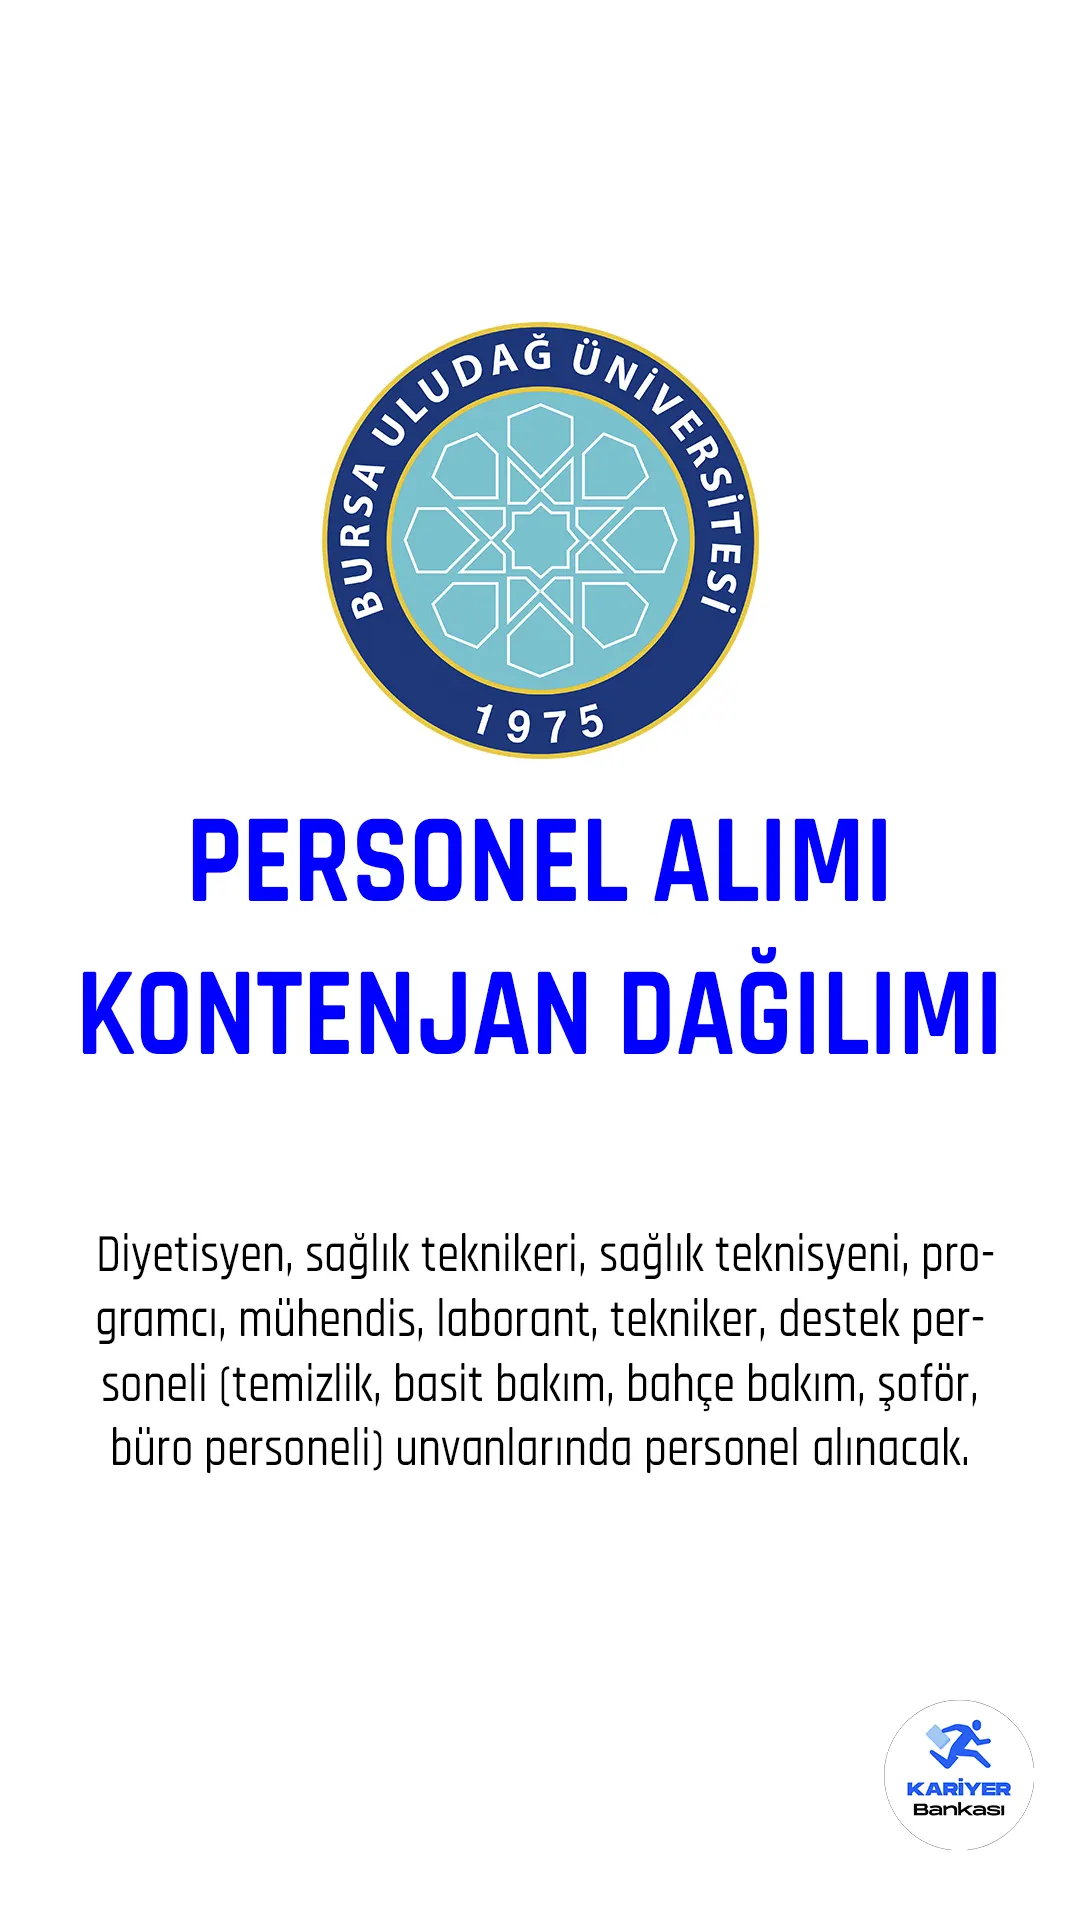 Bursa Uludağ Üniversitesi personel alımı başvuruları devam ediyor.